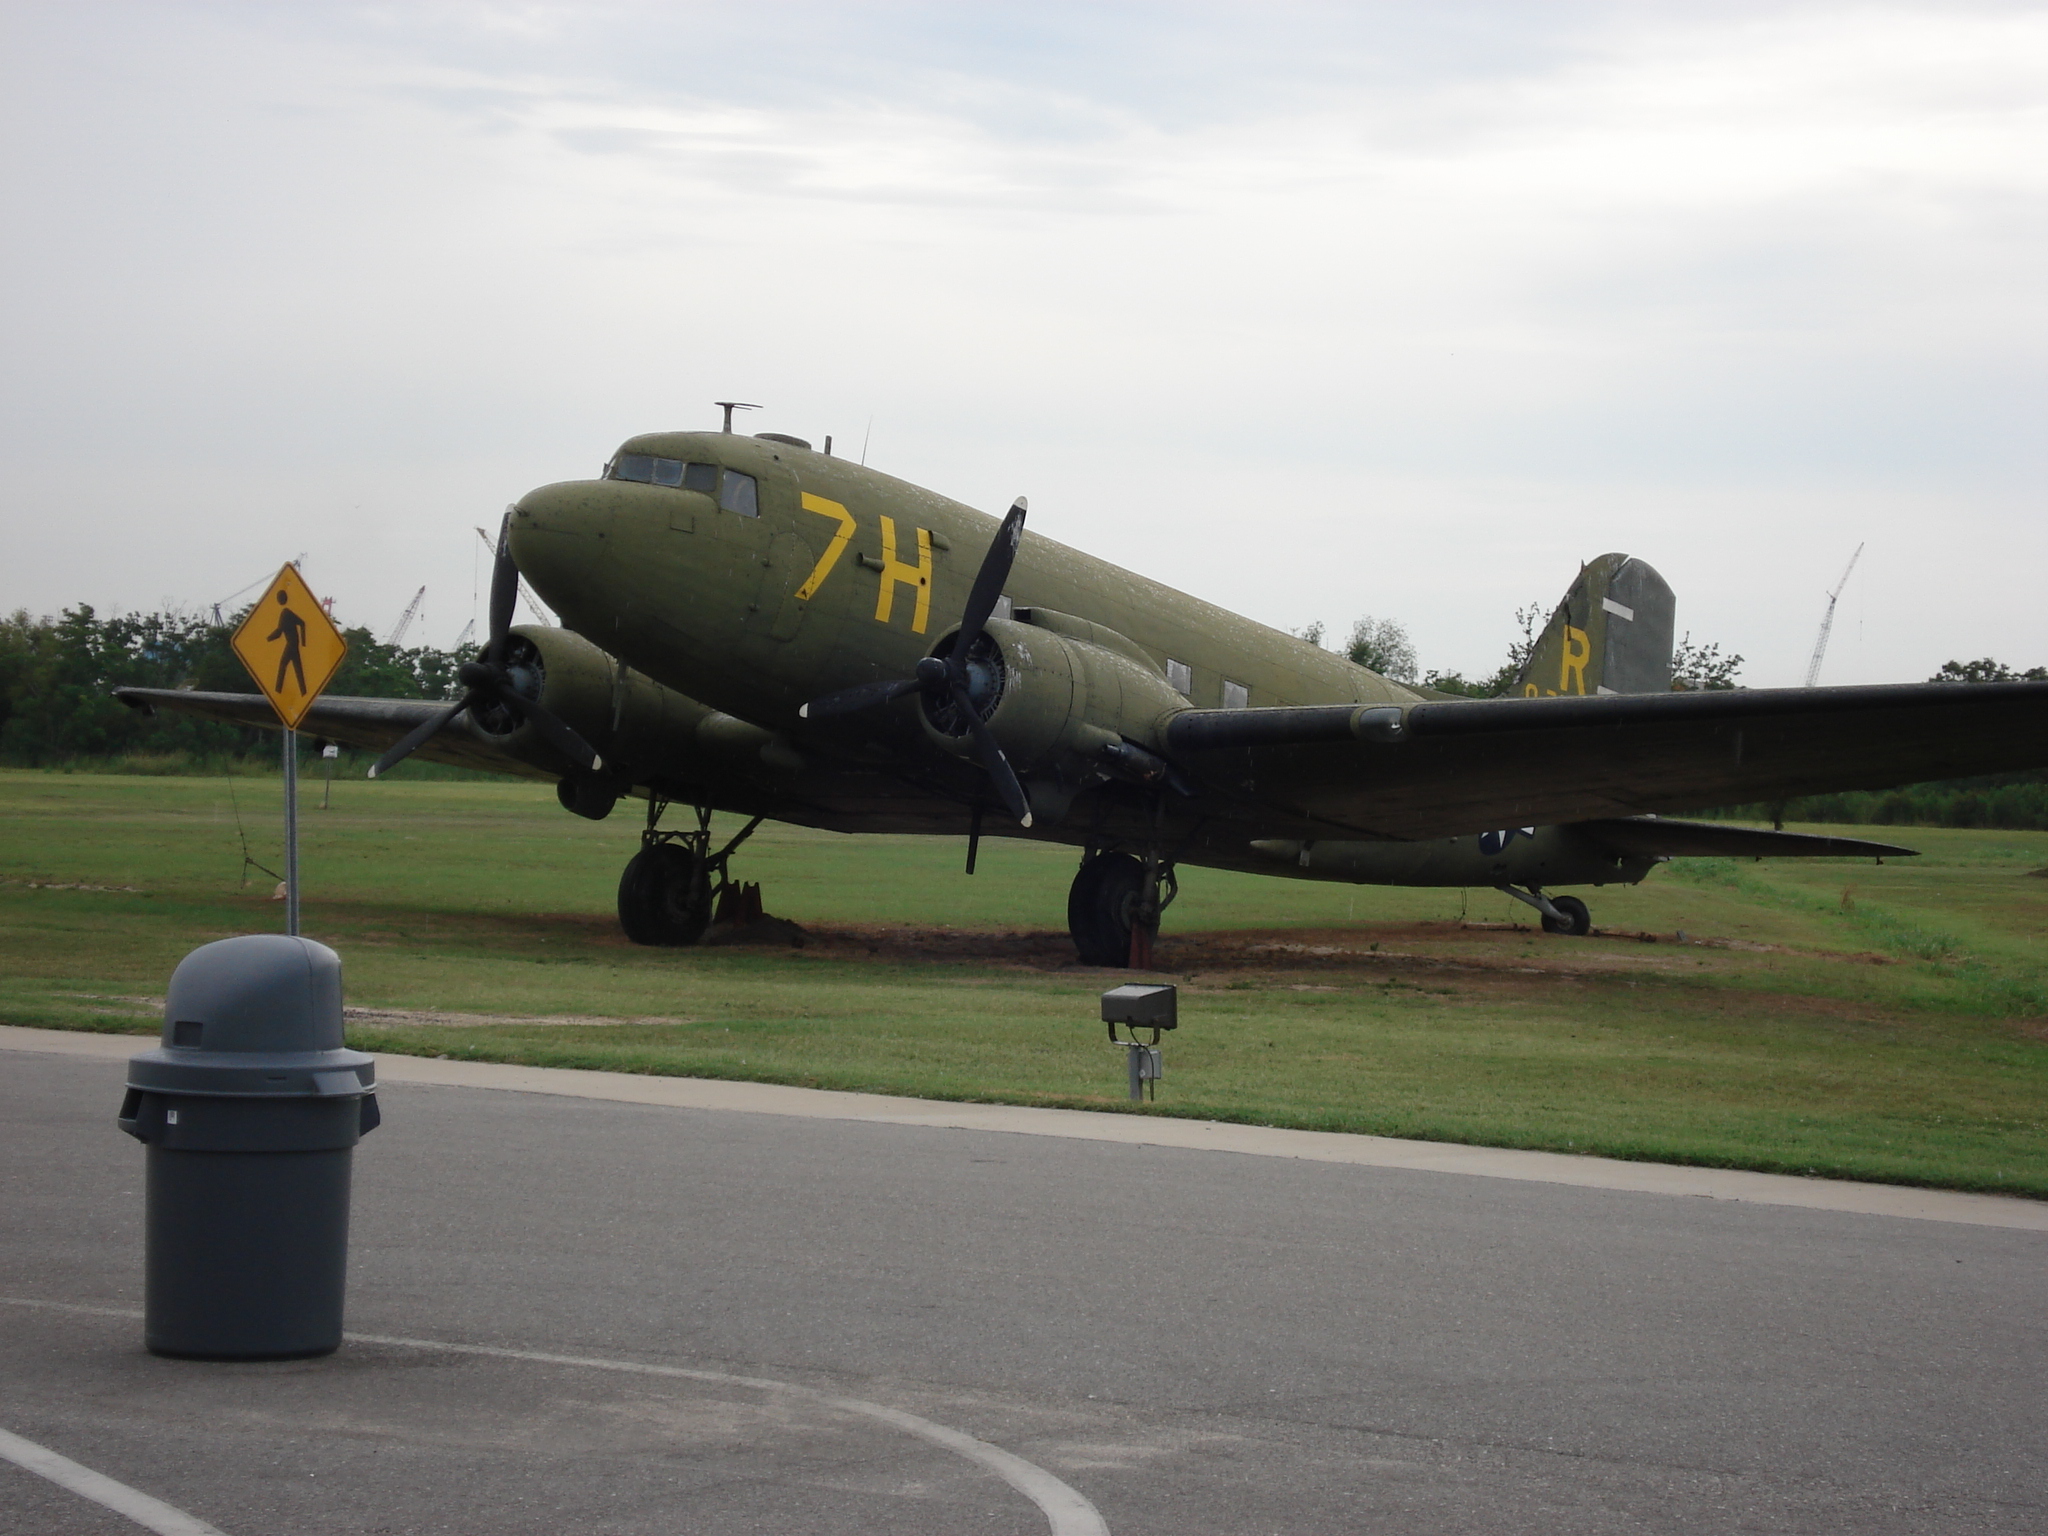 Aircraft at the USS Alabama Memorial Park